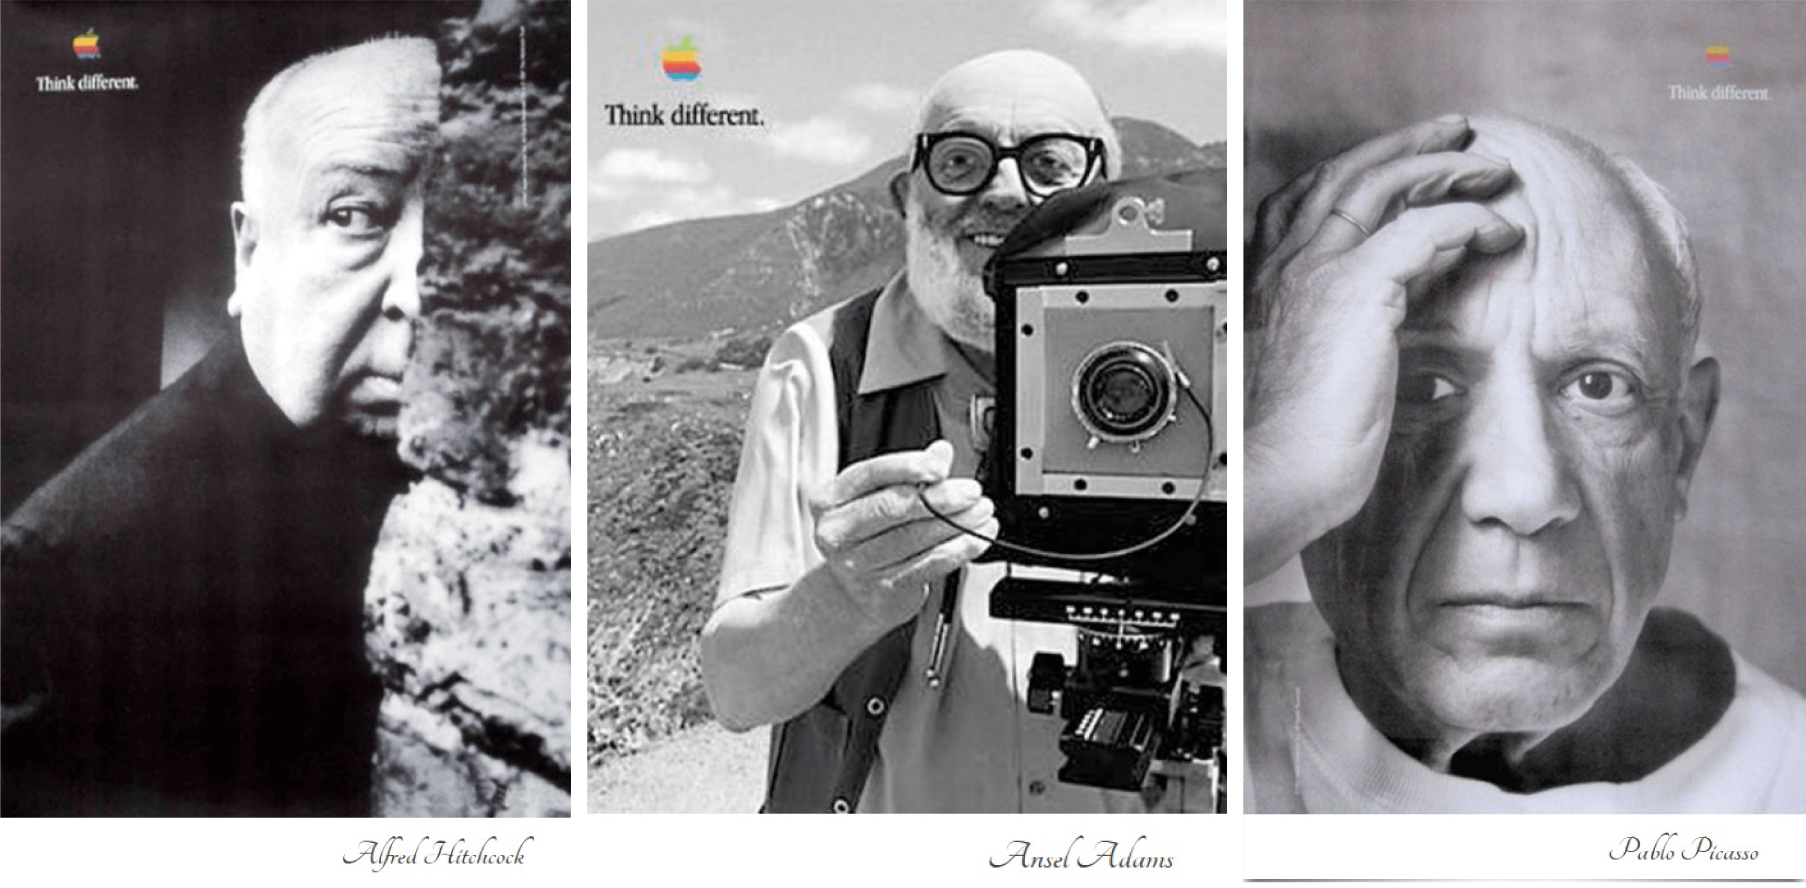 Trois publicités imprimées d'Apple pour leur campagne « Penser différemment » mettant en vedette le réalisateur Alfred Hitchcock, le photographe Ansel Adams et le peintre Pablo Picasso.